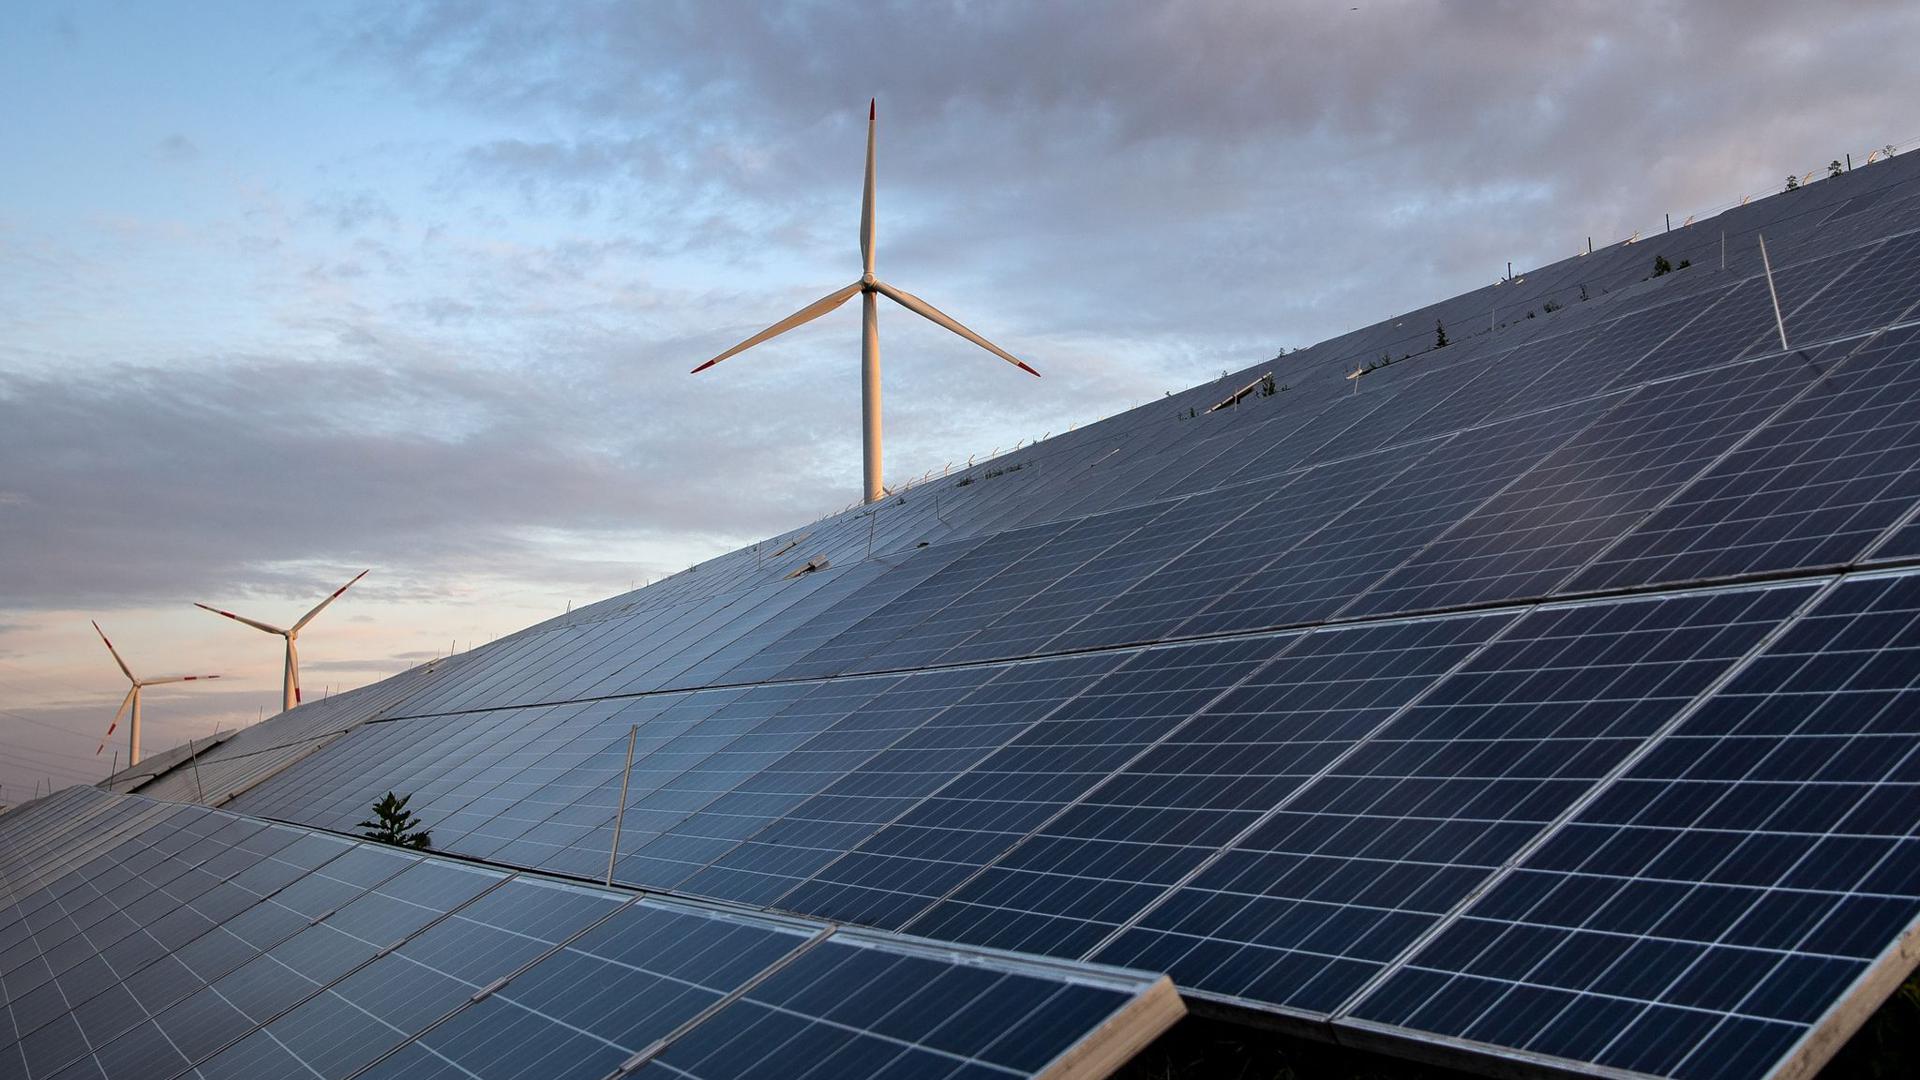 Windkraftanlagen stehen hinter Photovoltaikanlagen.